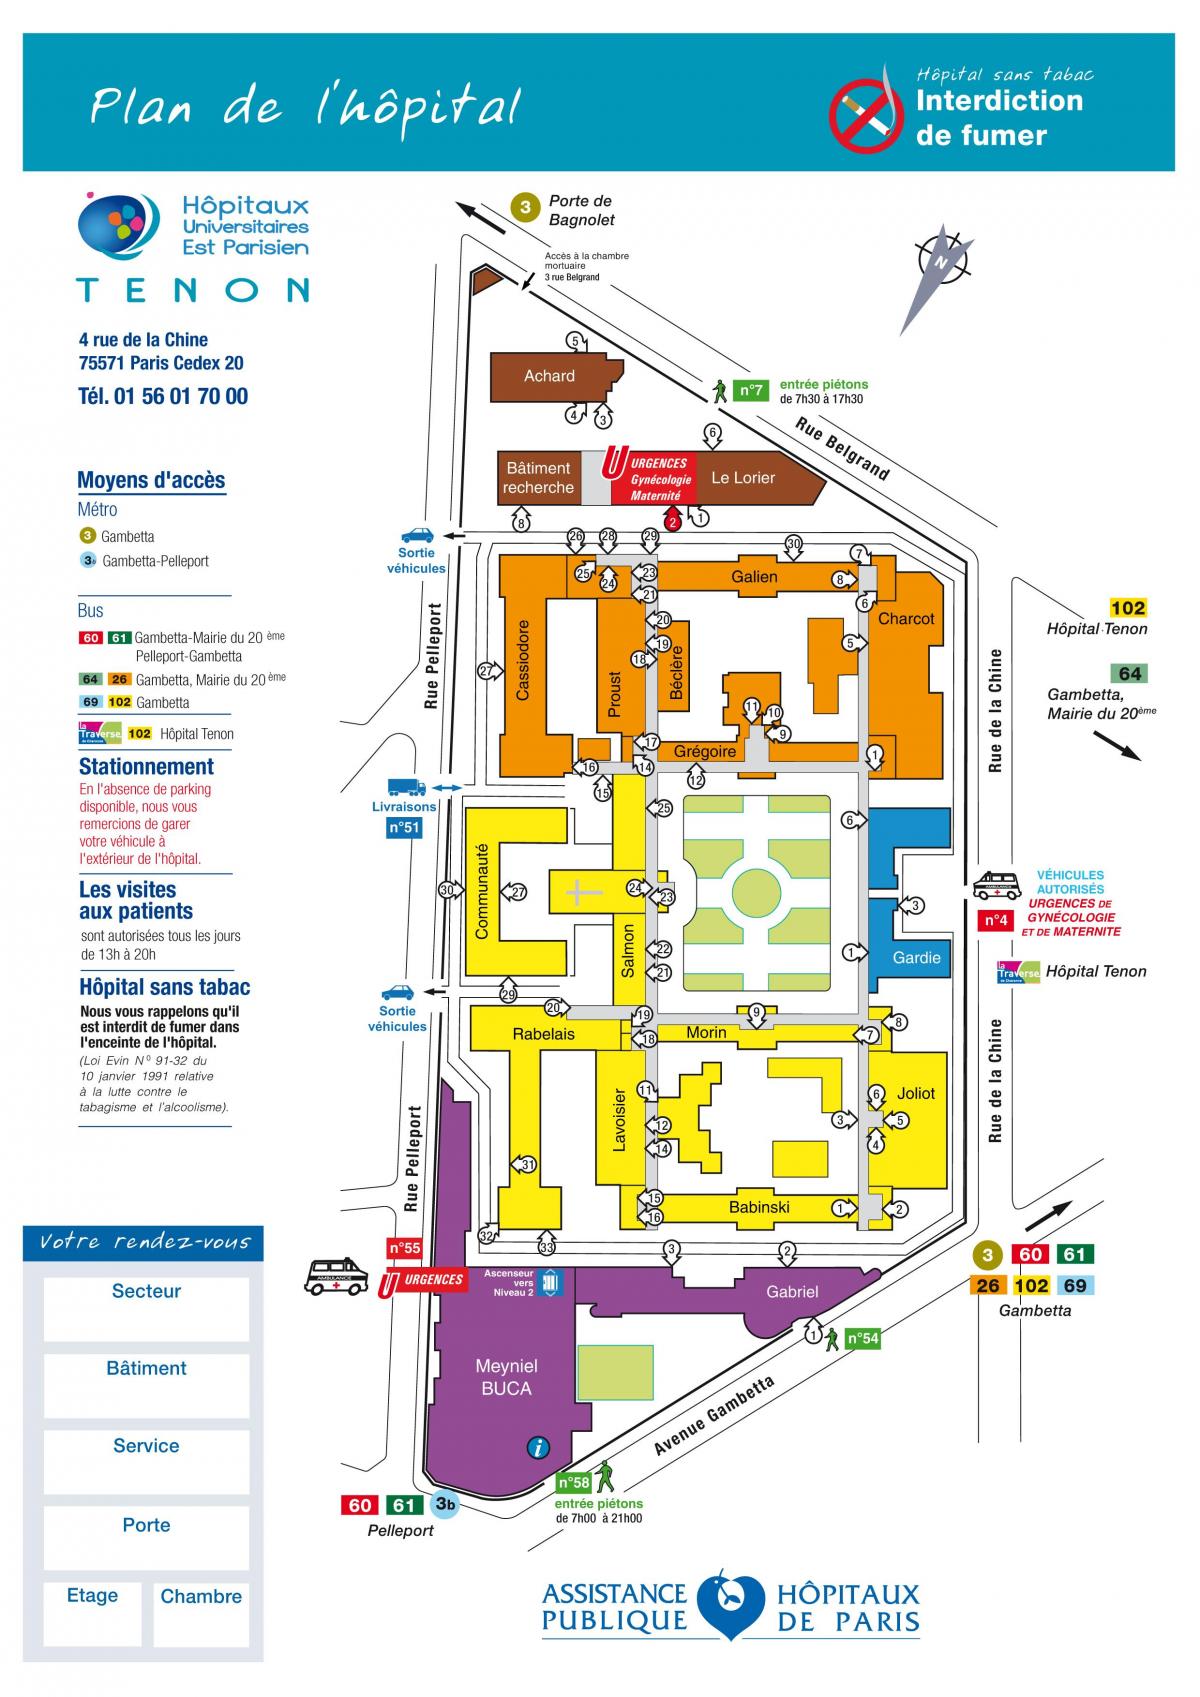 Map of Tenon hospital